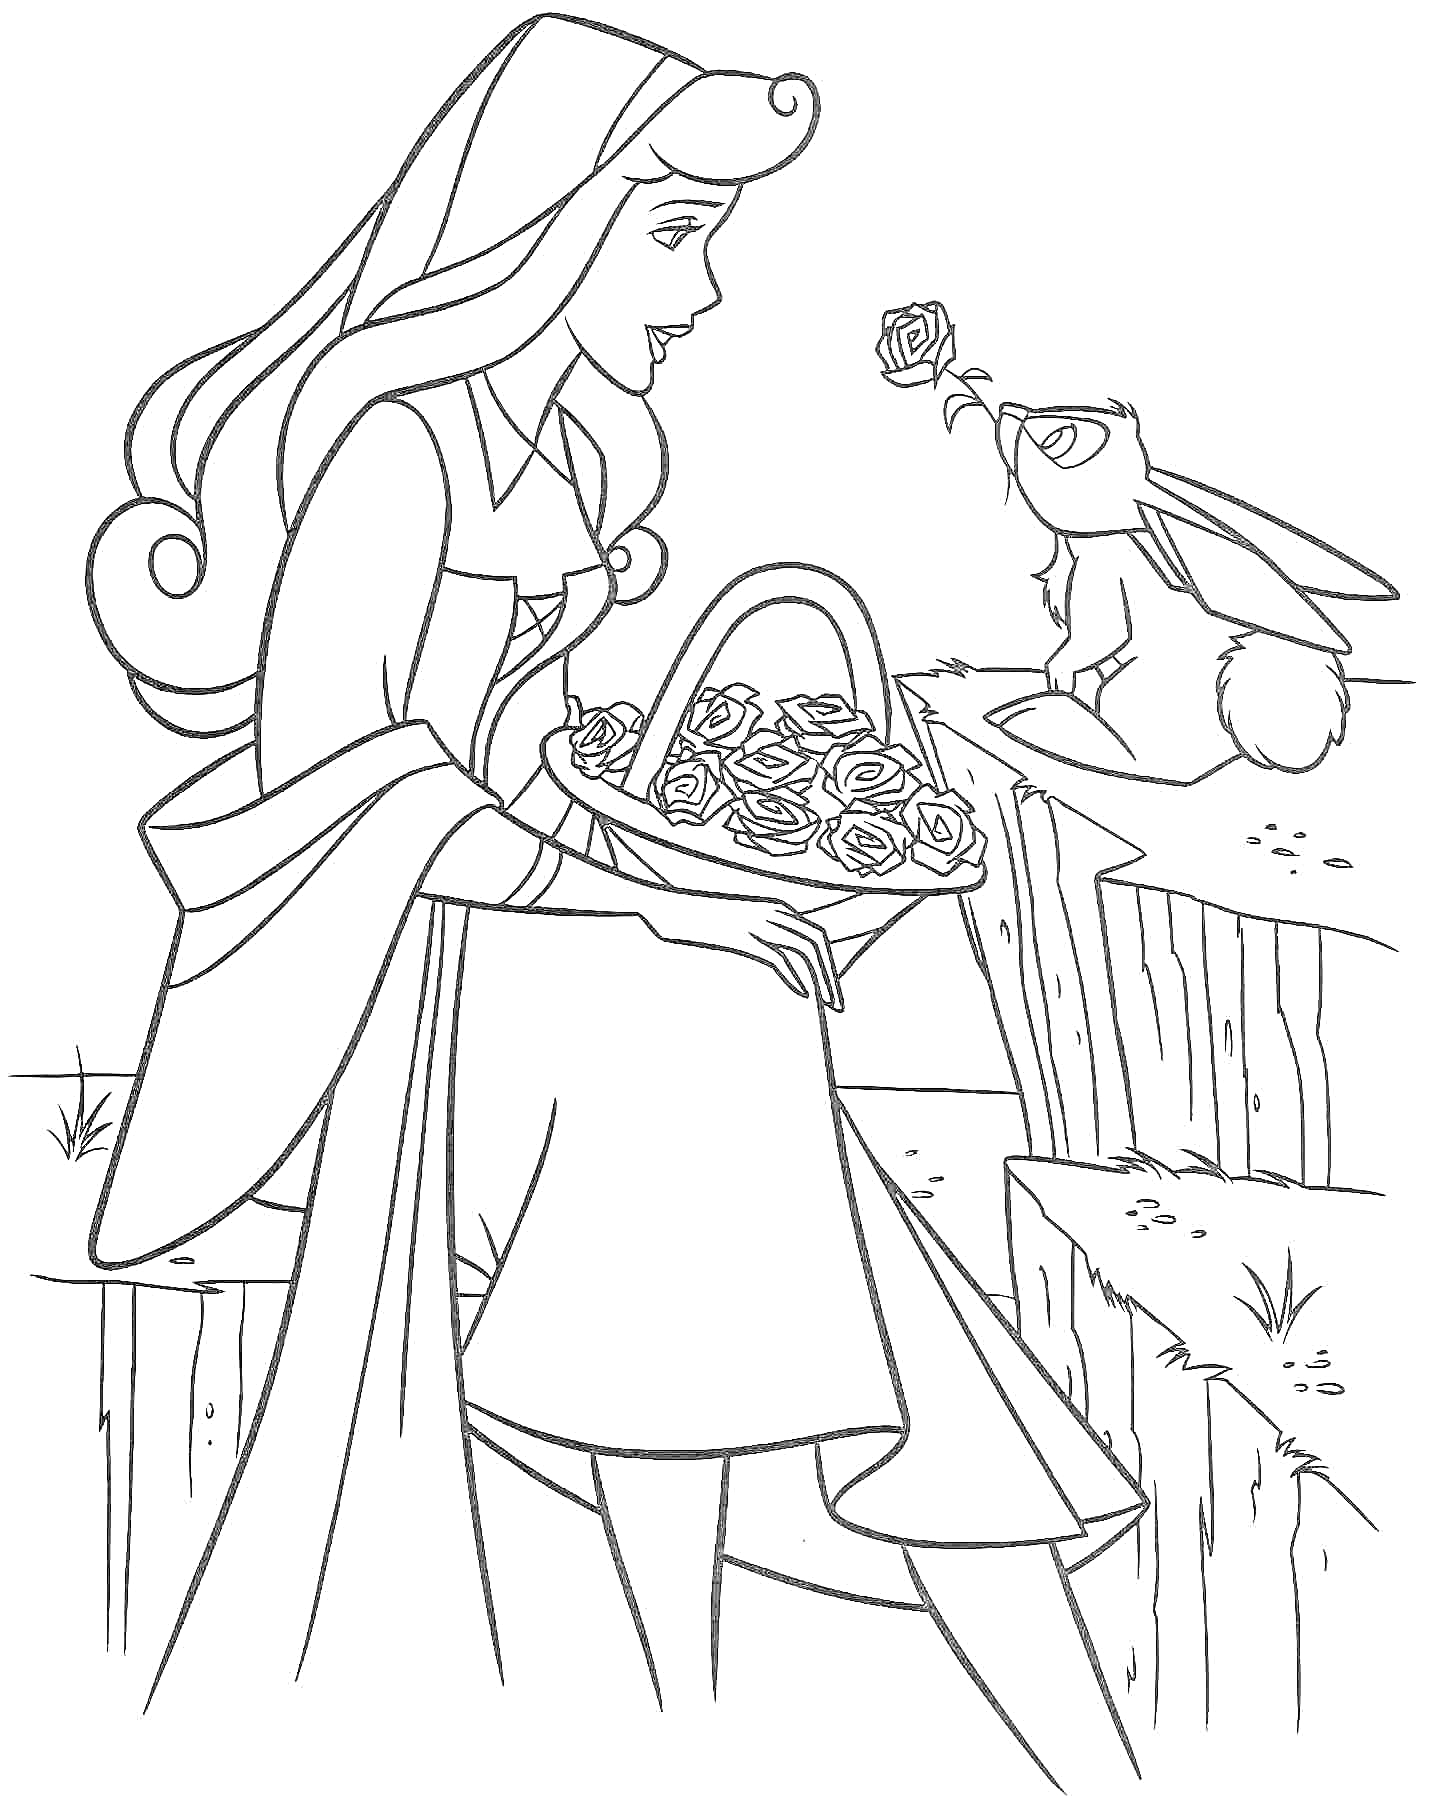 Раскраска Принцесса Аврора с корзиной роз сидит на скале рядом с кроликом, держащим розу